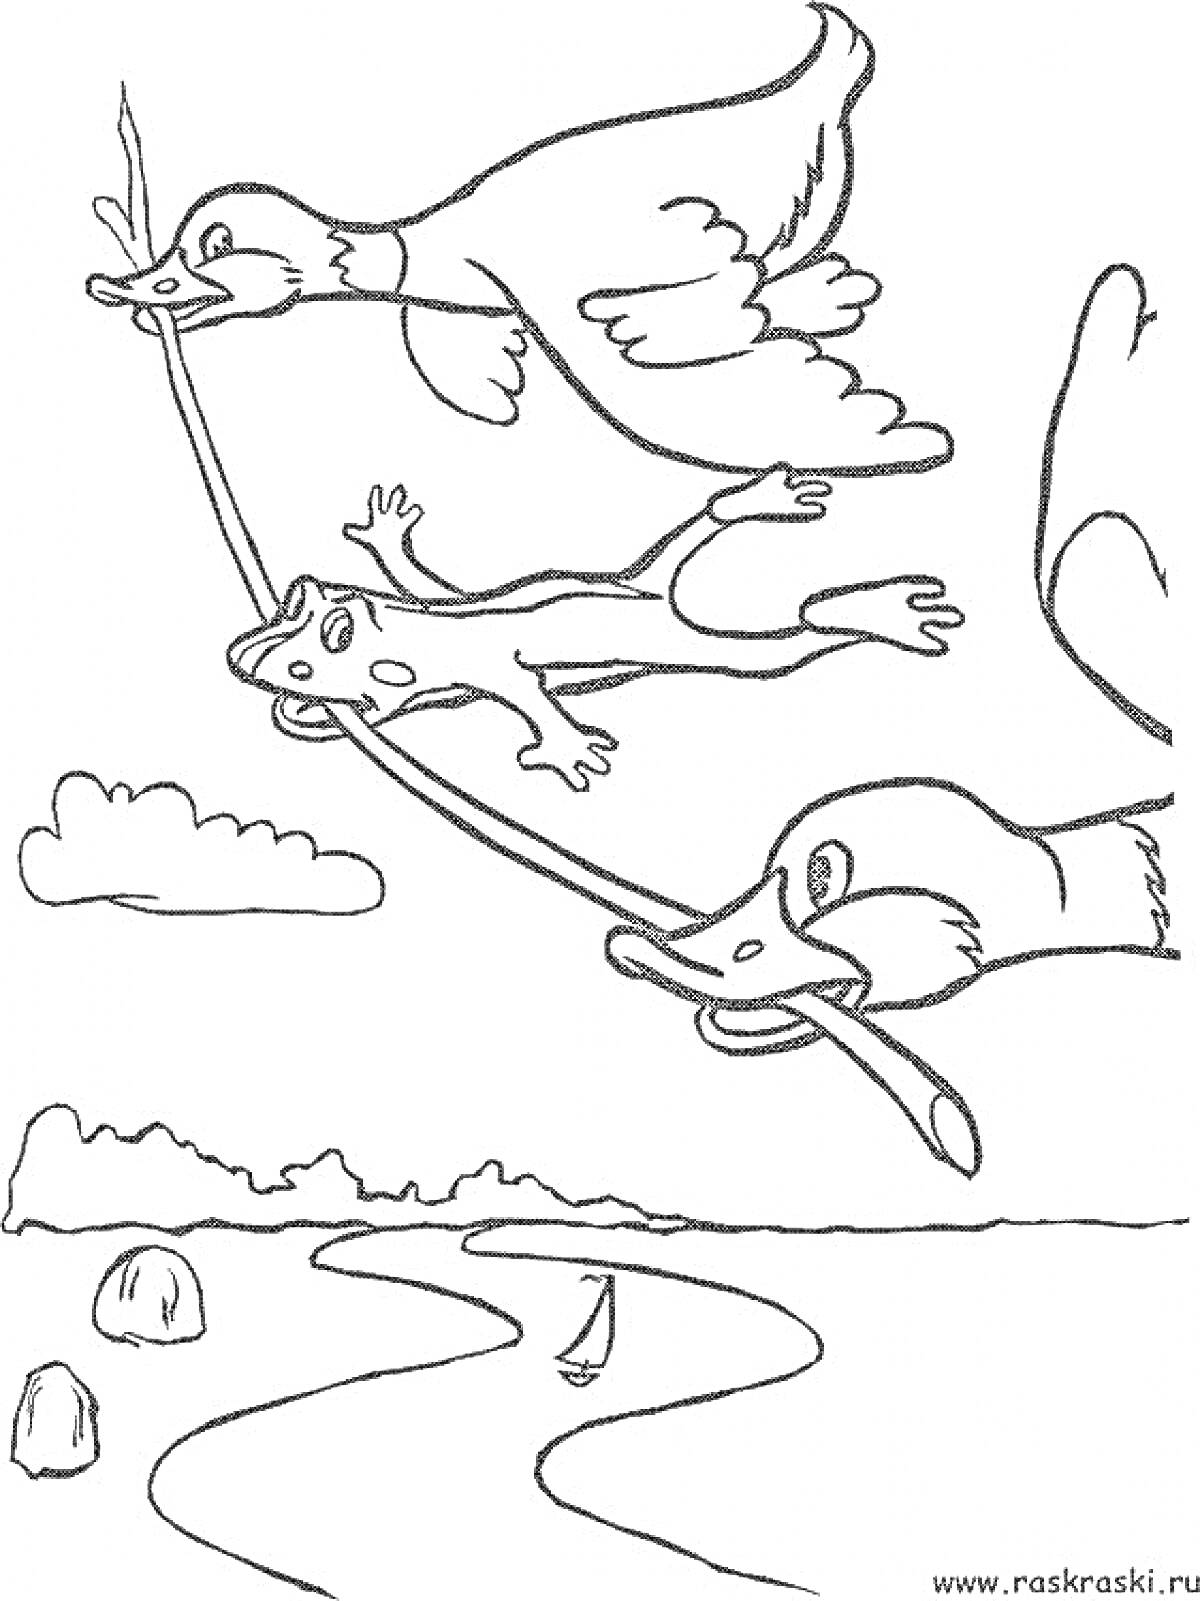 Раскраска Лягушка путешественница: лягушка летит, держась за палку в клювах двух птиц, пейзаж с облаками, рекой и лодкой